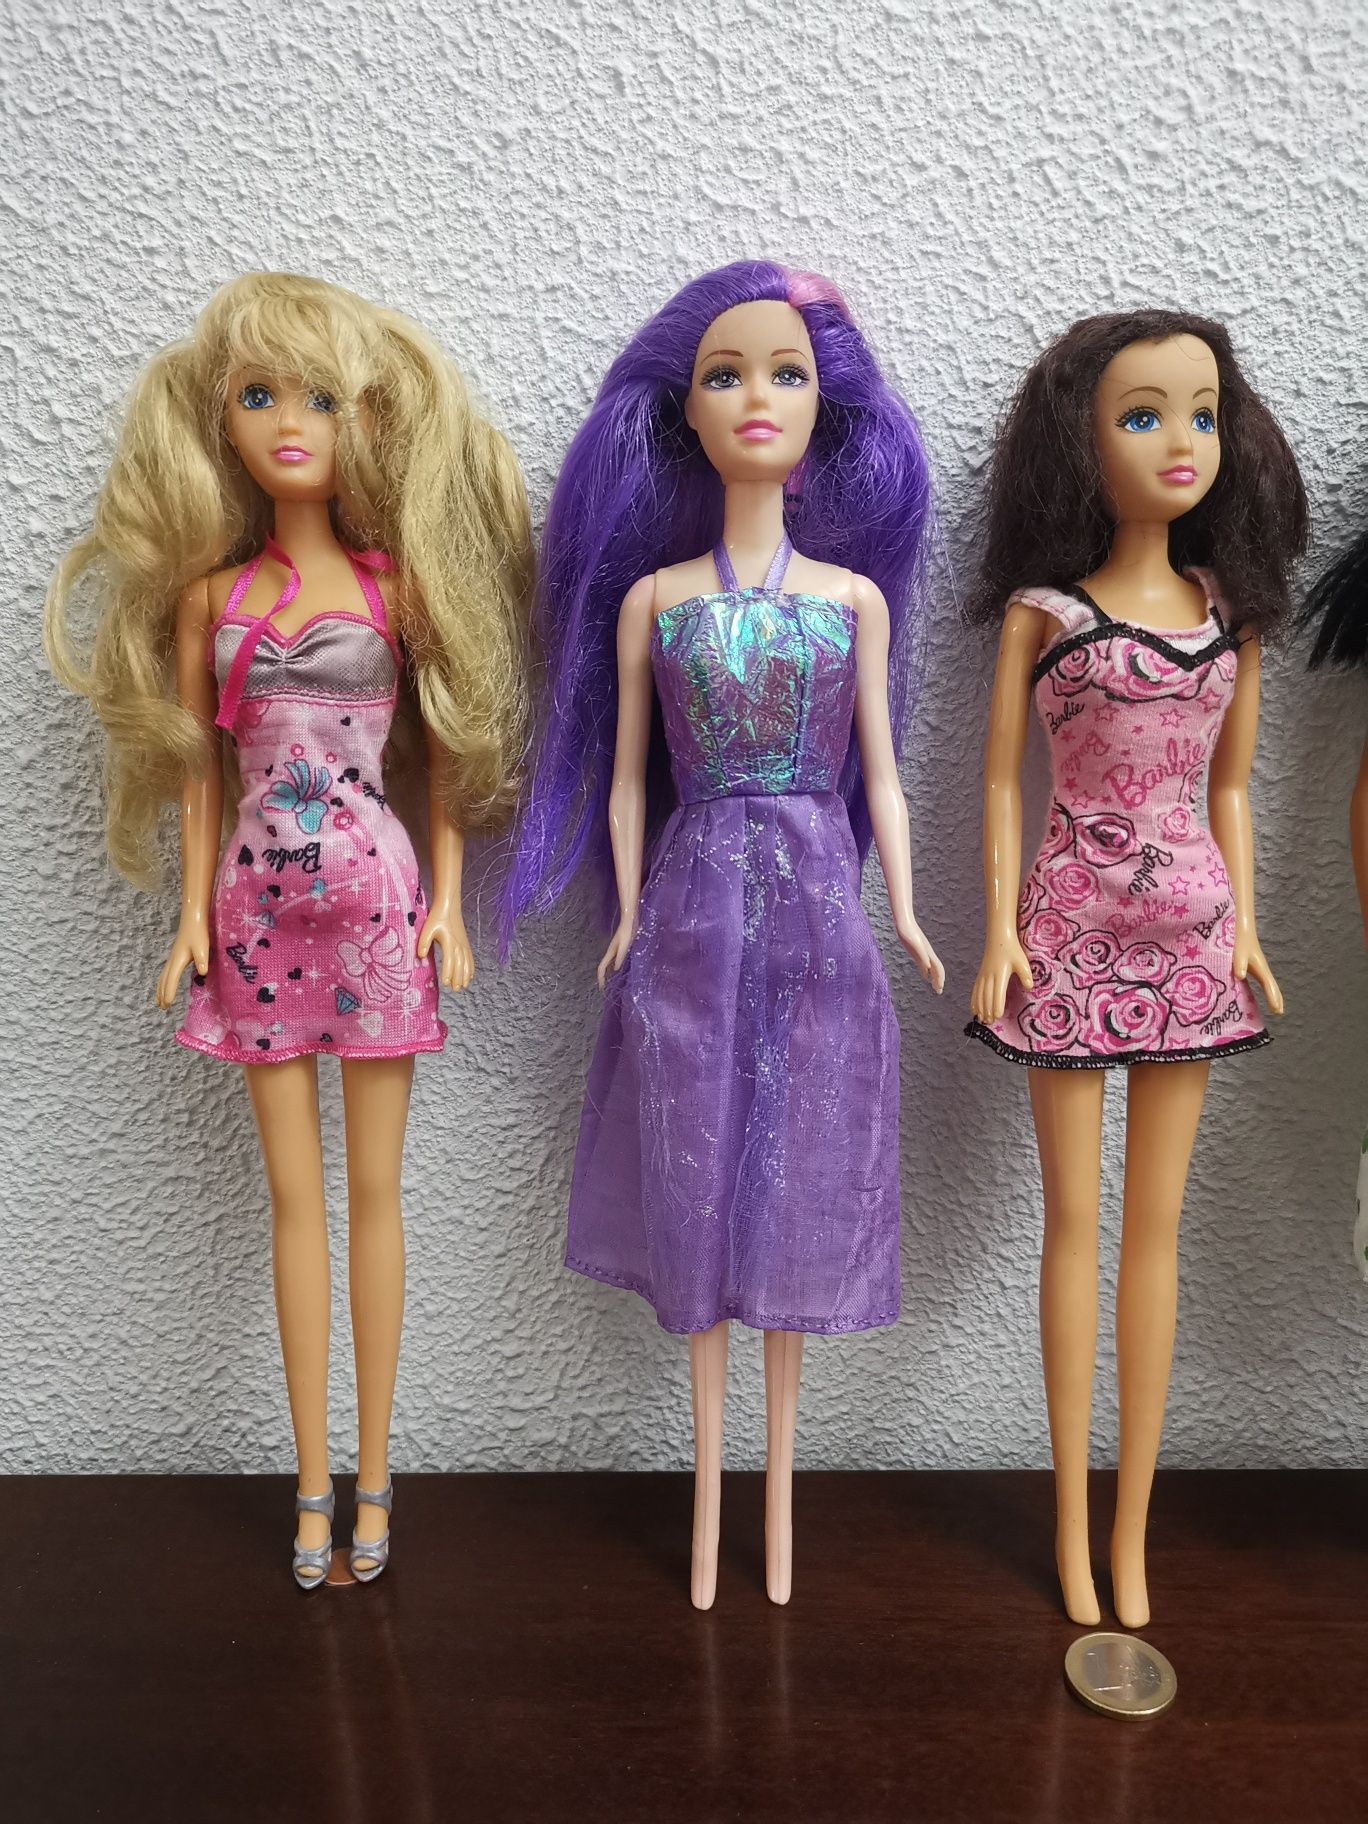 2 Bonecas Barbie Originais + 5 Bonecas Barbie não Originais